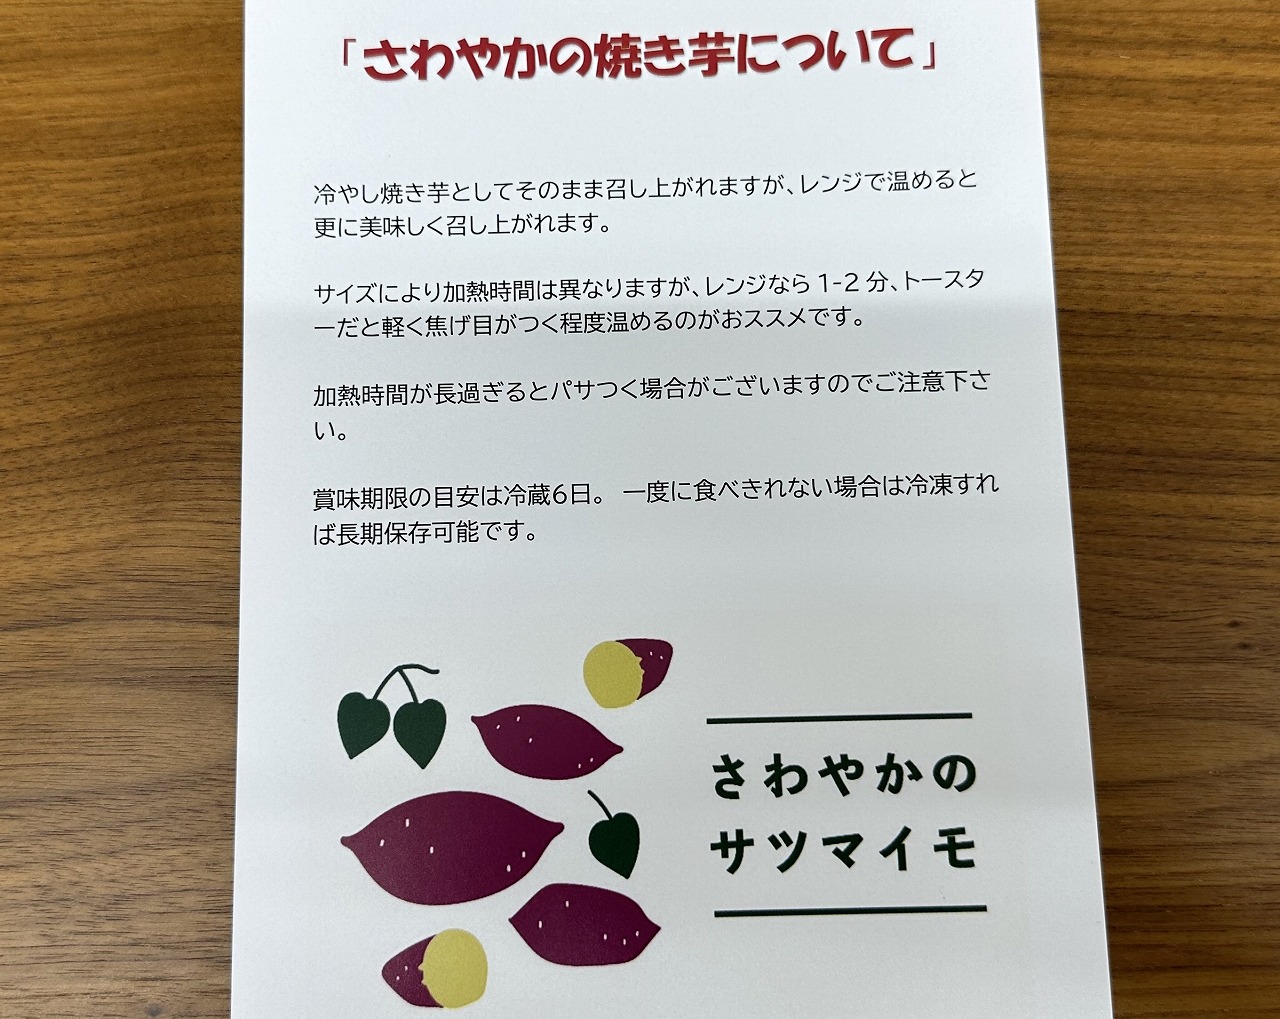  冷やし焼きも無人販売所「さわやかのサツマイモ 神戸市東灘店」